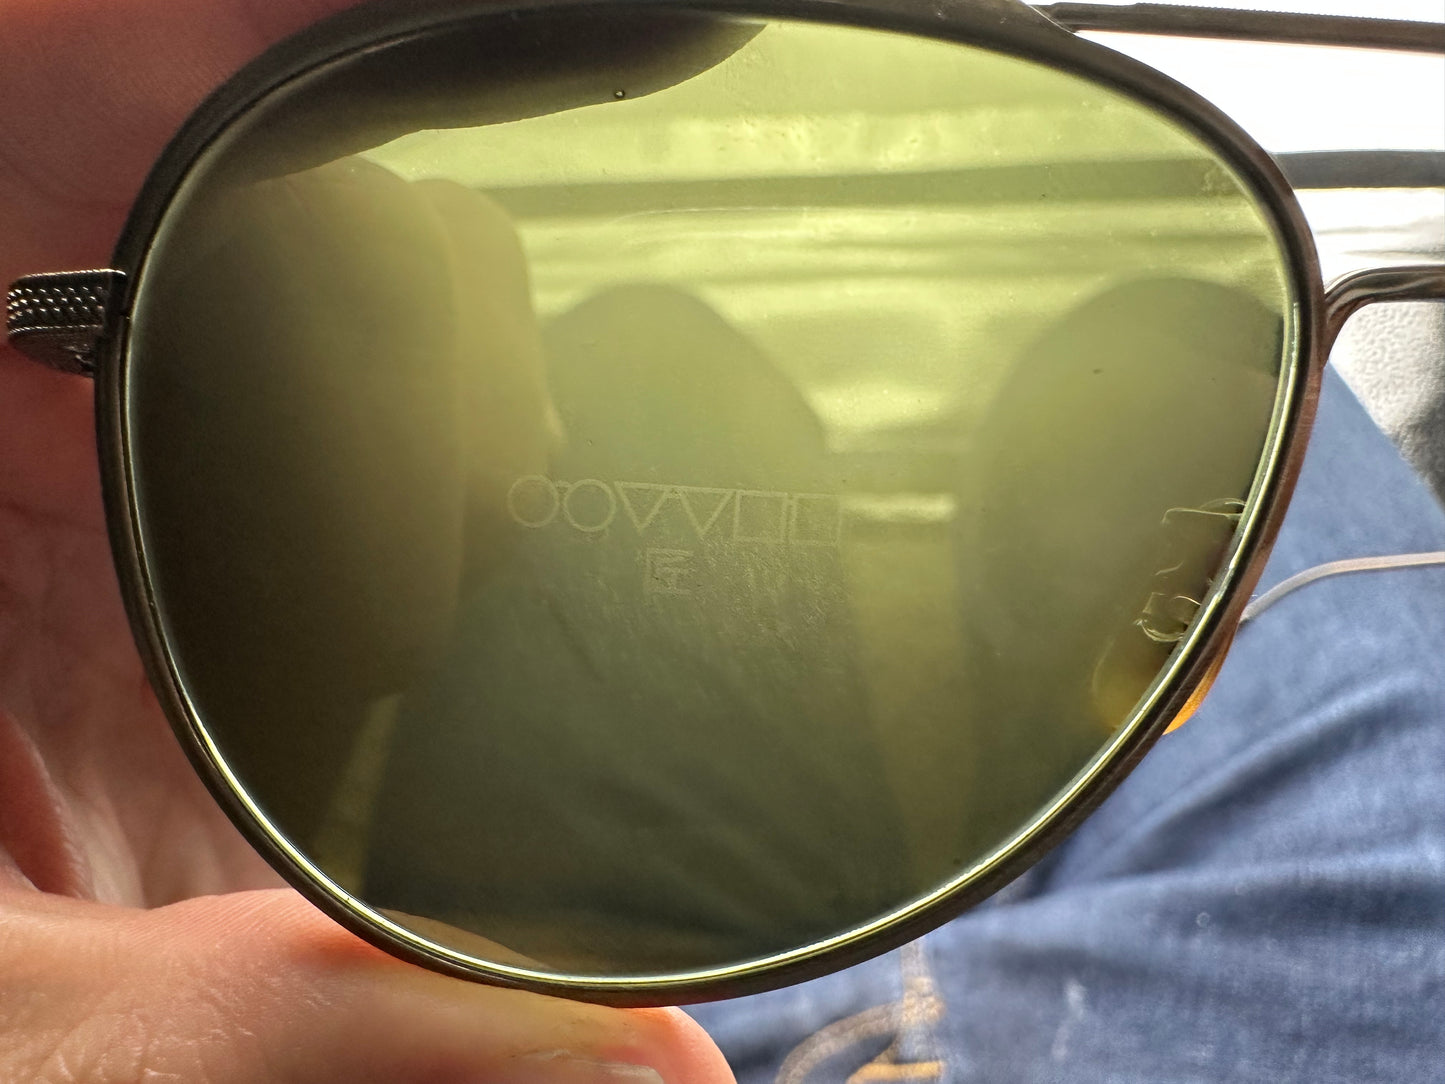 Oliver Peoples TK-3 OV 1276ST 53mm Antique Gold G-15 528452 Sunglasses